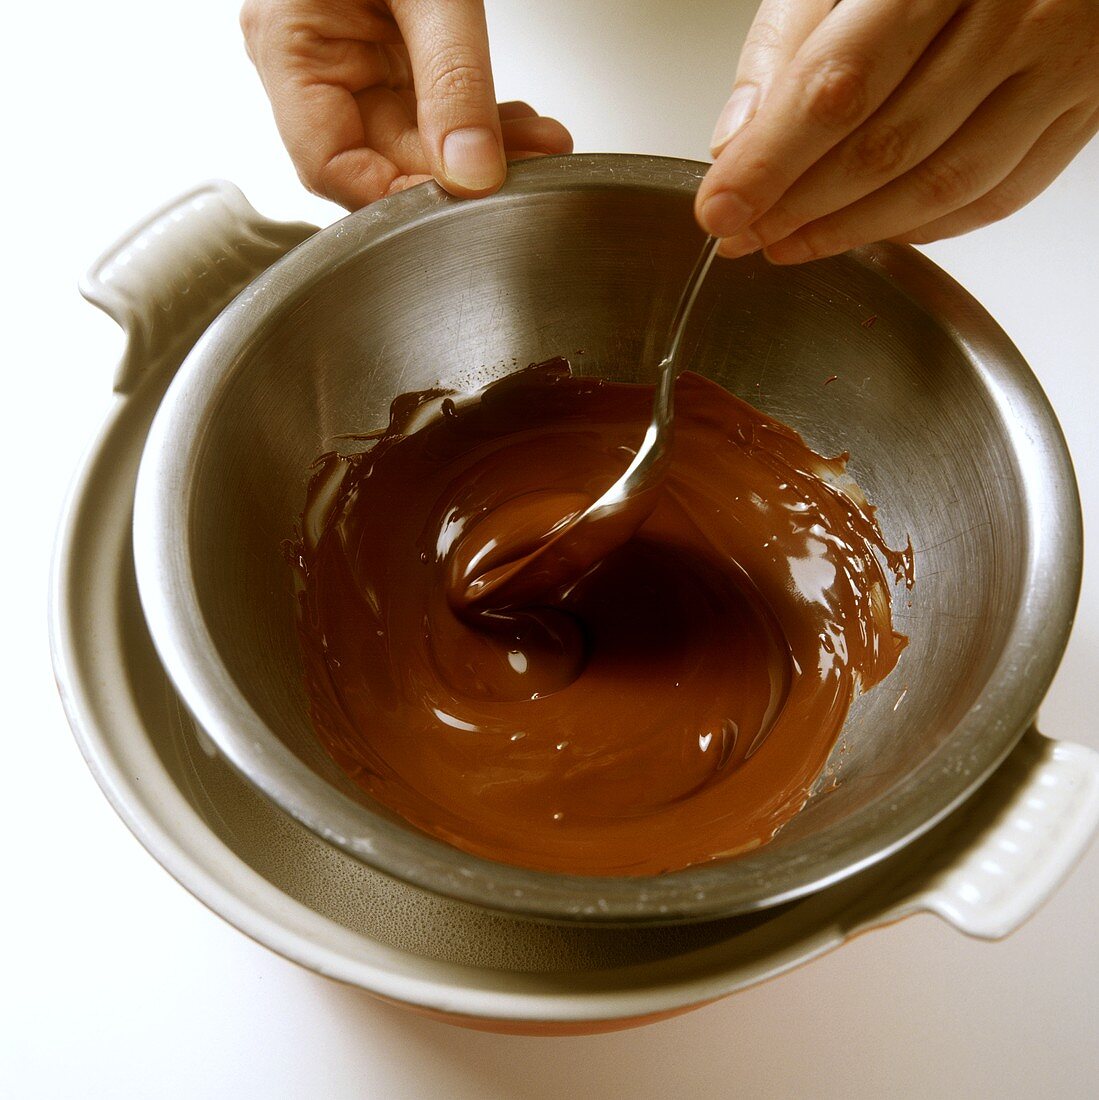 Schokolade über Wasserbad schmelzen lassen